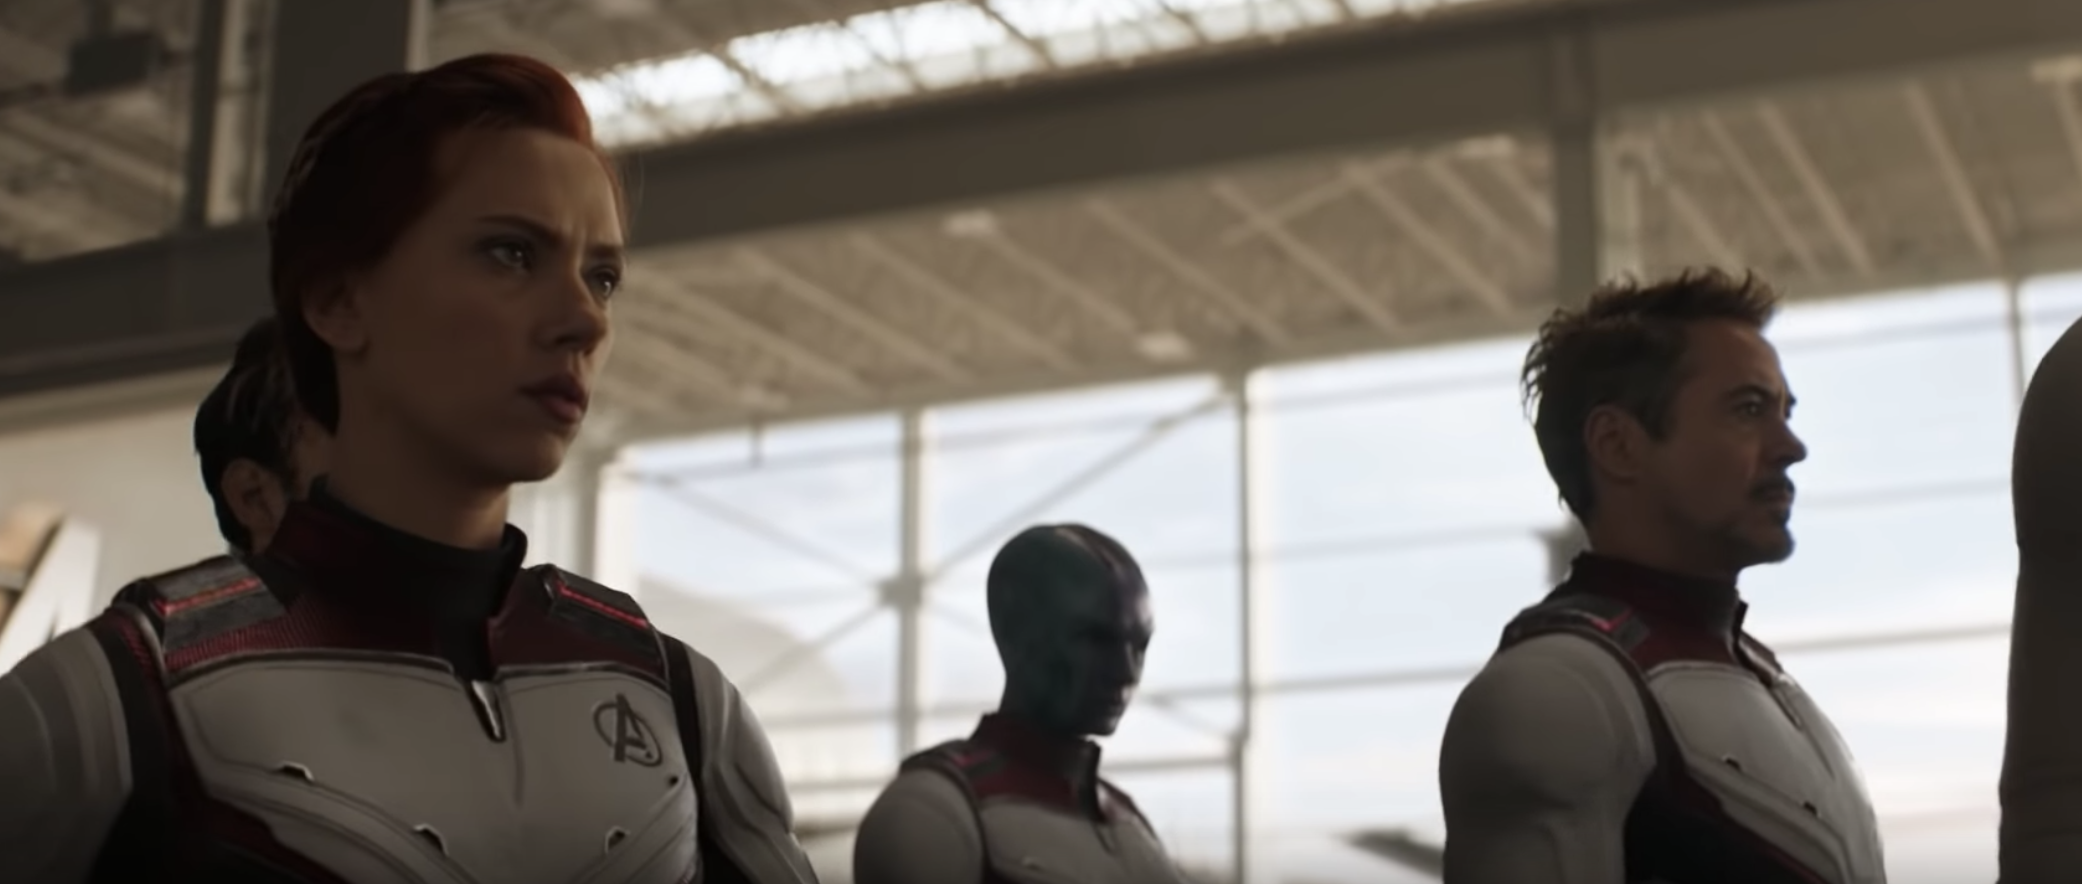 Robert Downey Jr. as Tony Stark wears new Avengers suit in Avengers: Endgame trailer